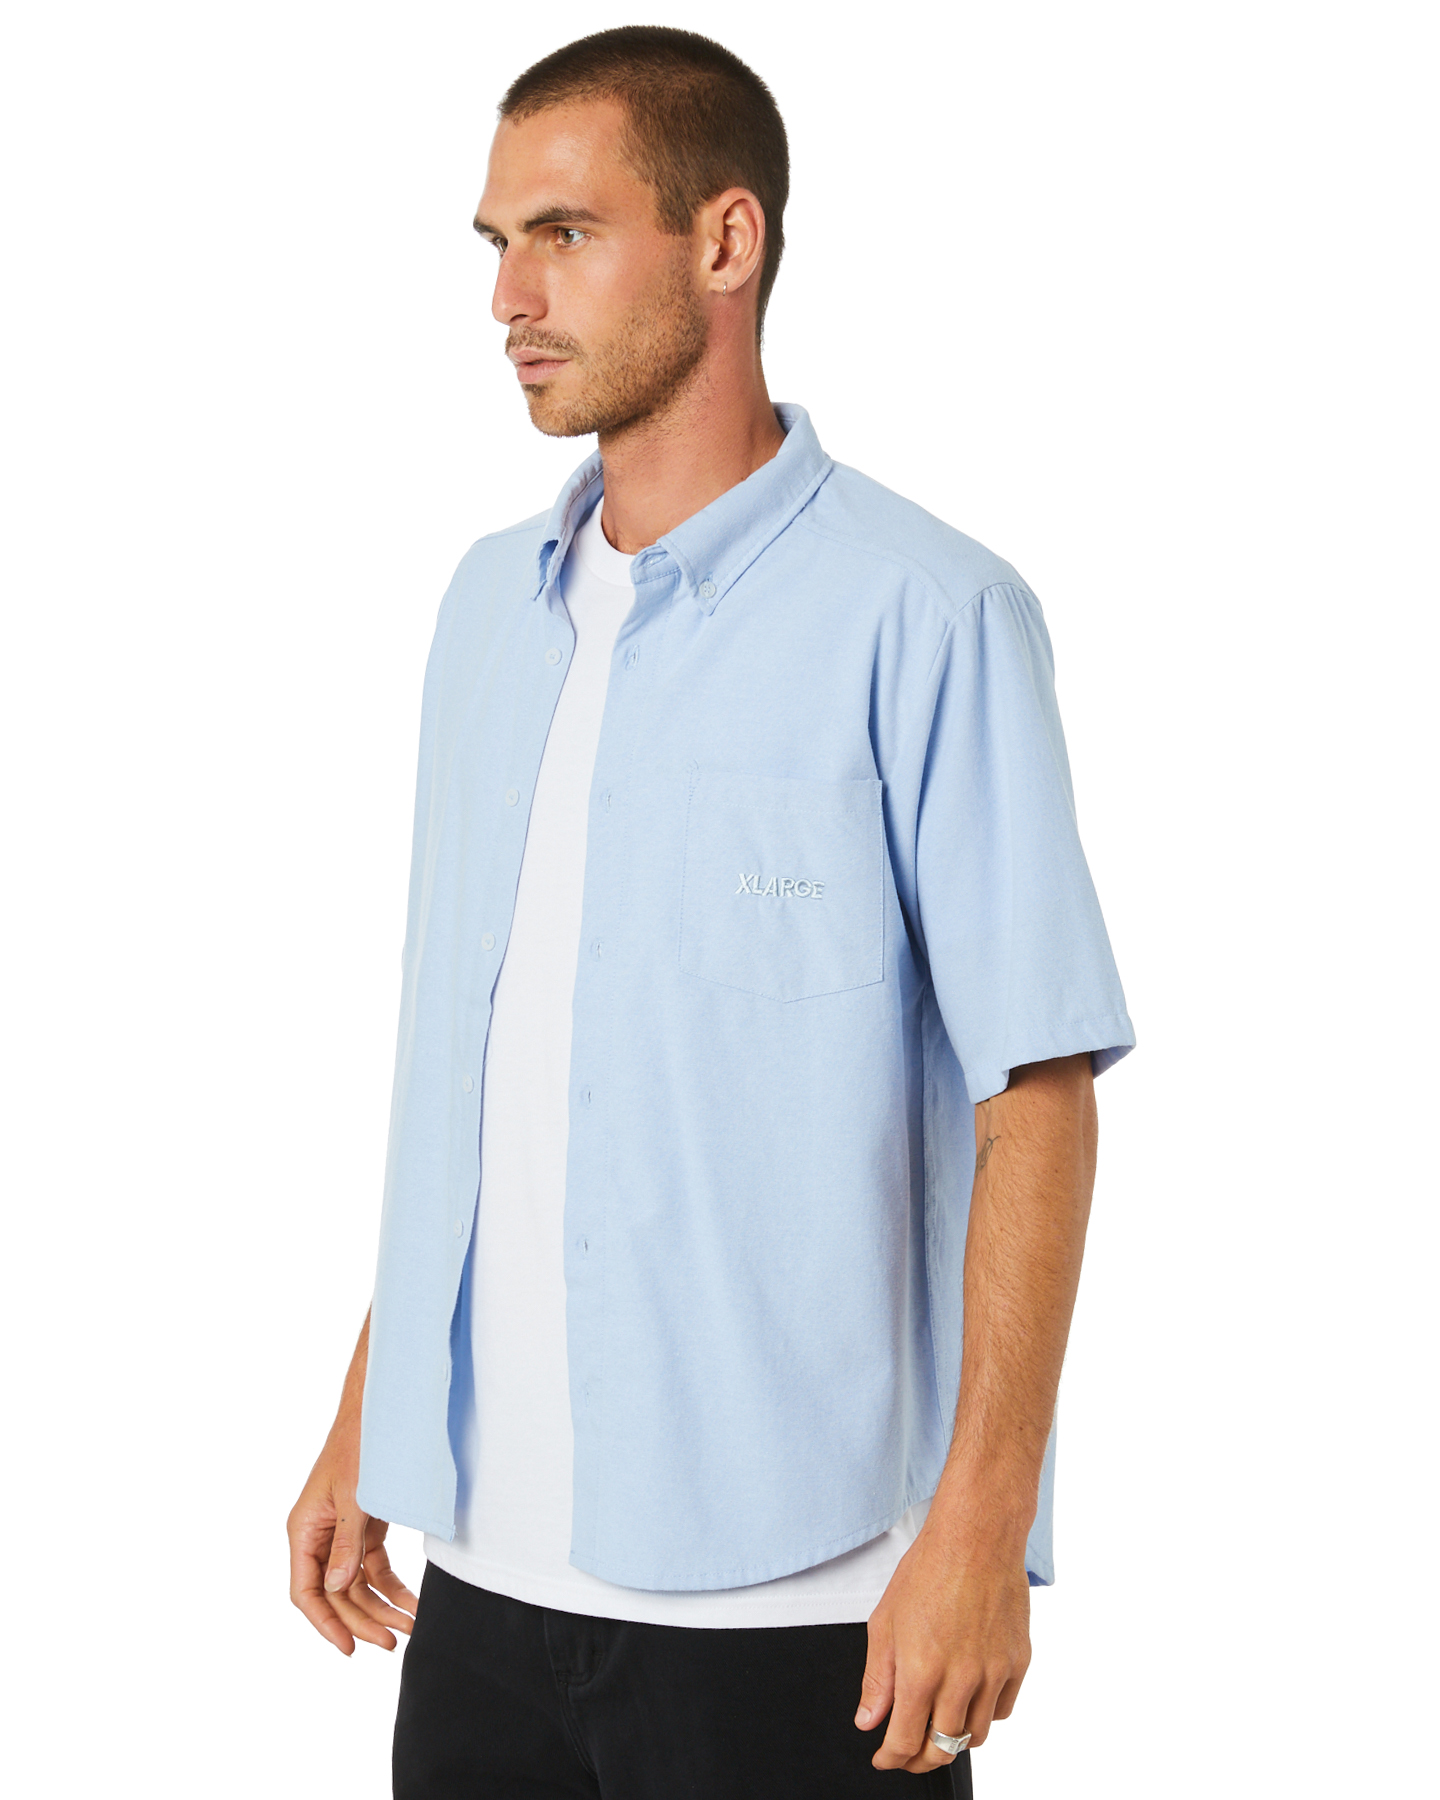 Xlarge 91 Oxford Mens Ss Shirt - Blue | SurfStitch